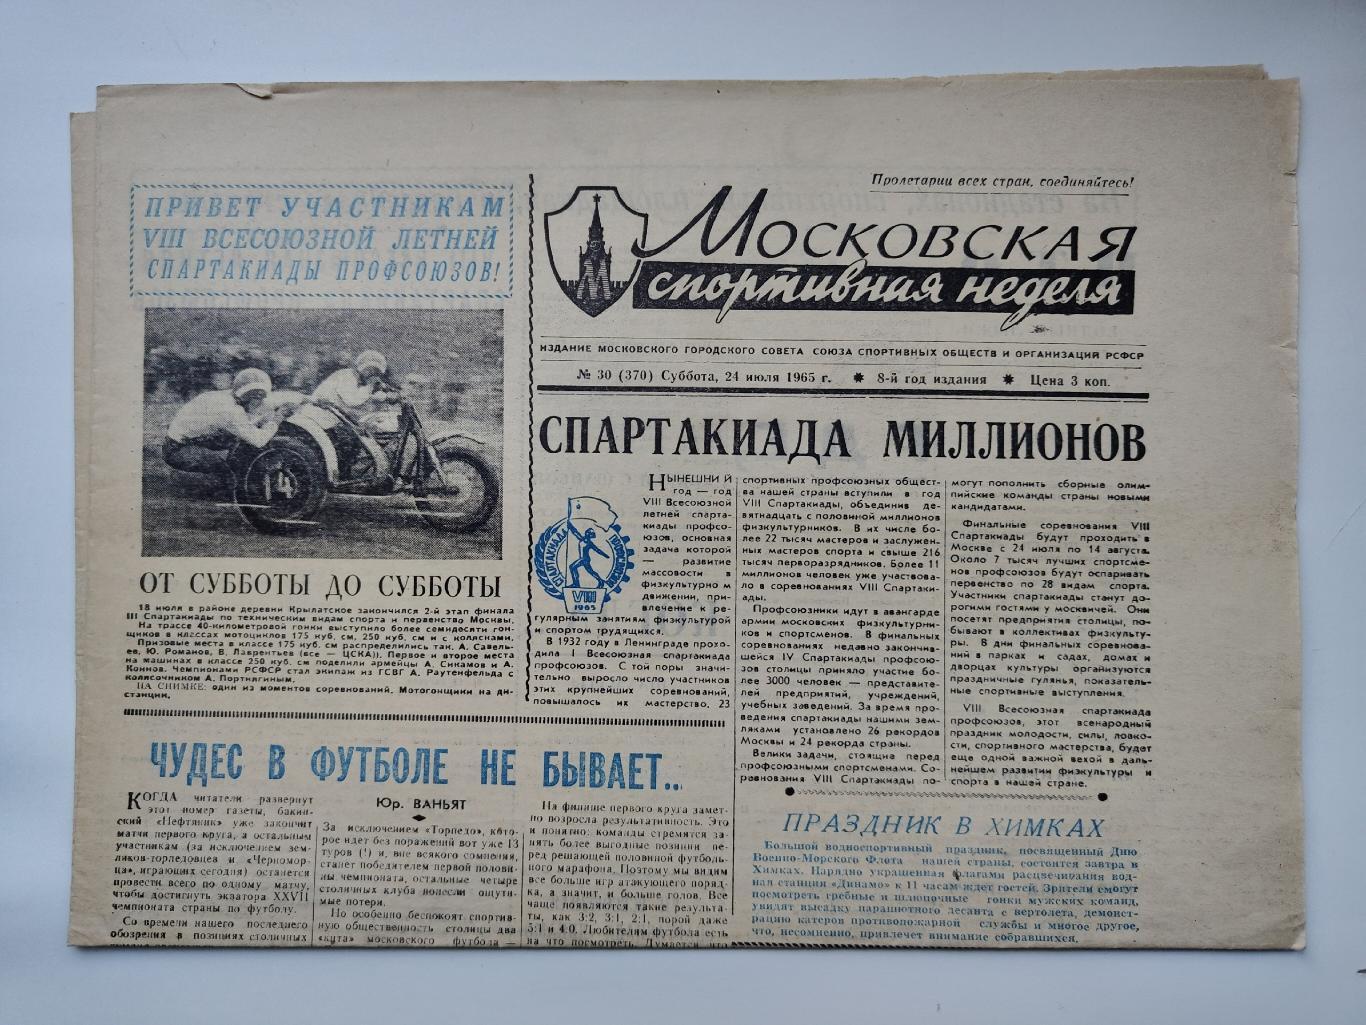 Газета Московская спортивная неделя №30 24 июля 1965 (читайте описание)